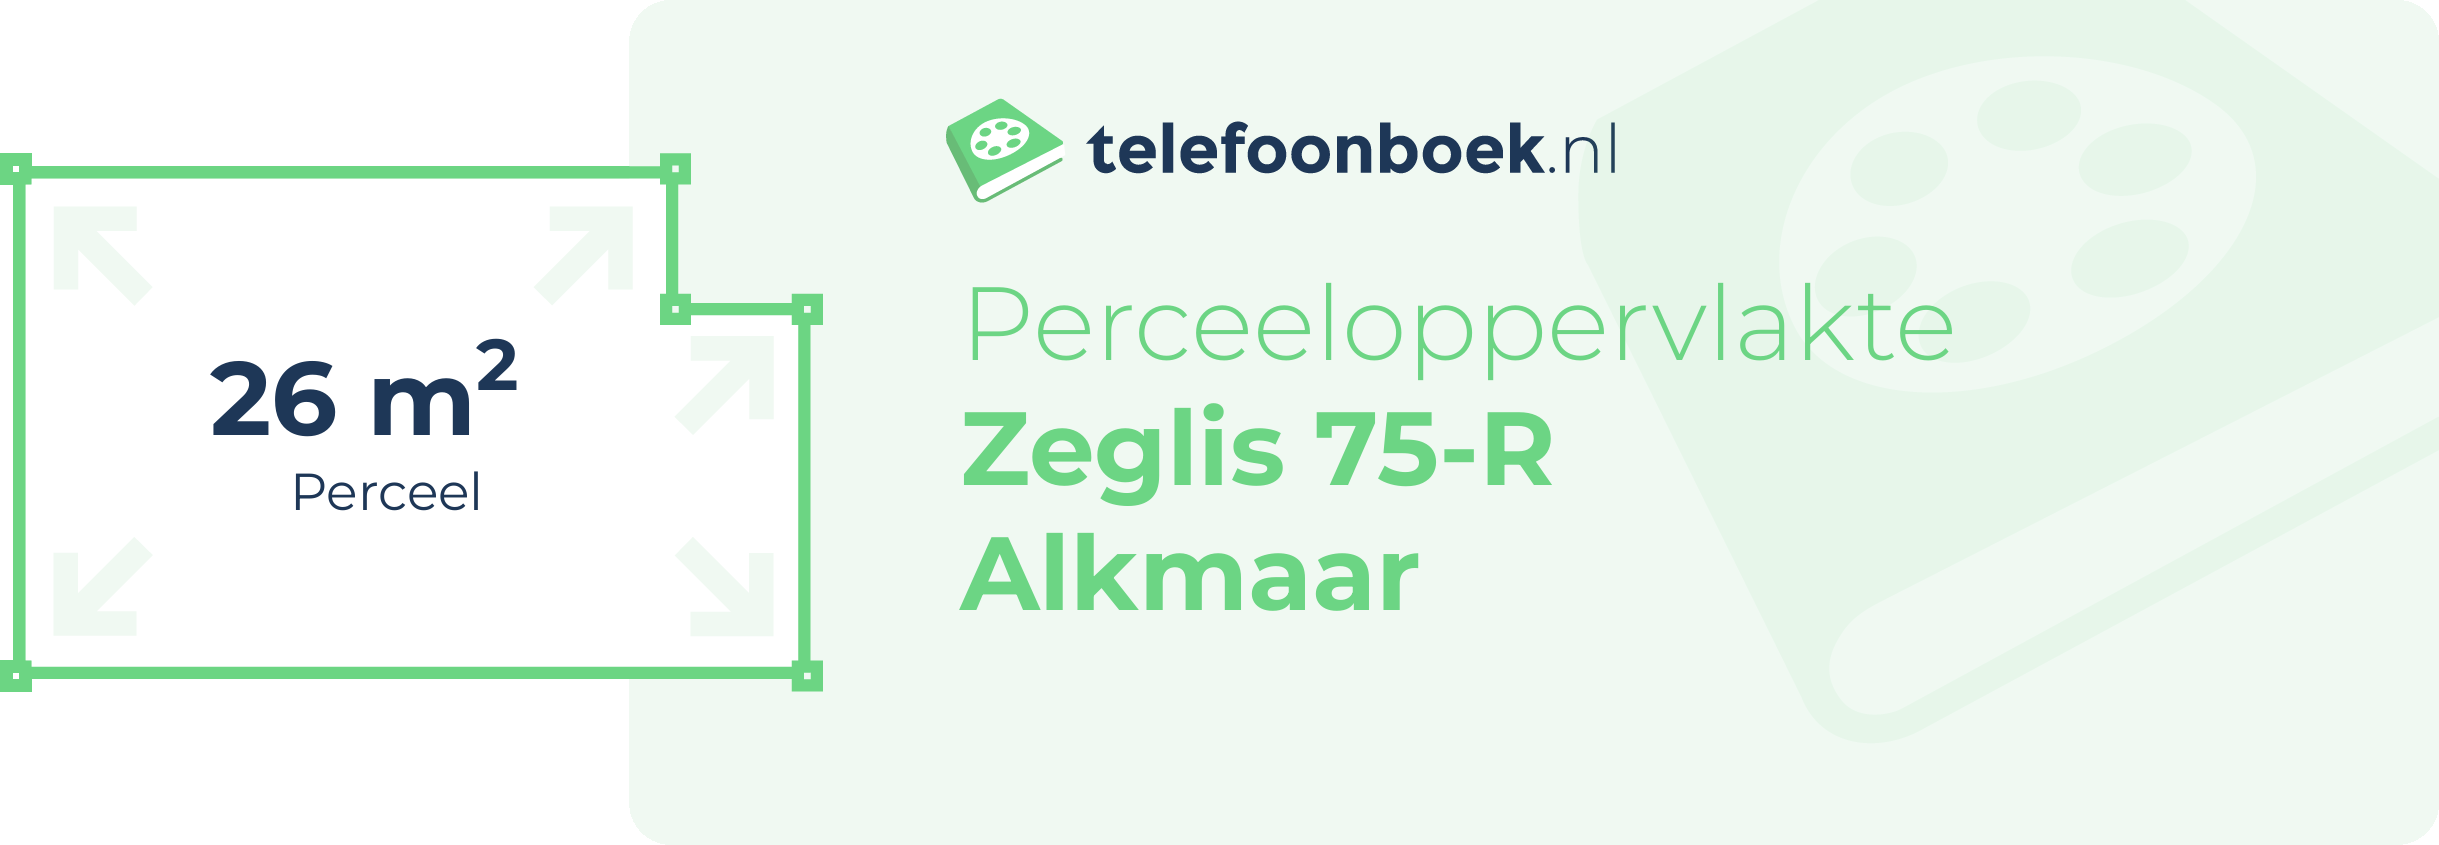 Perceeloppervlakte Zeglis 75-R Alkmaar